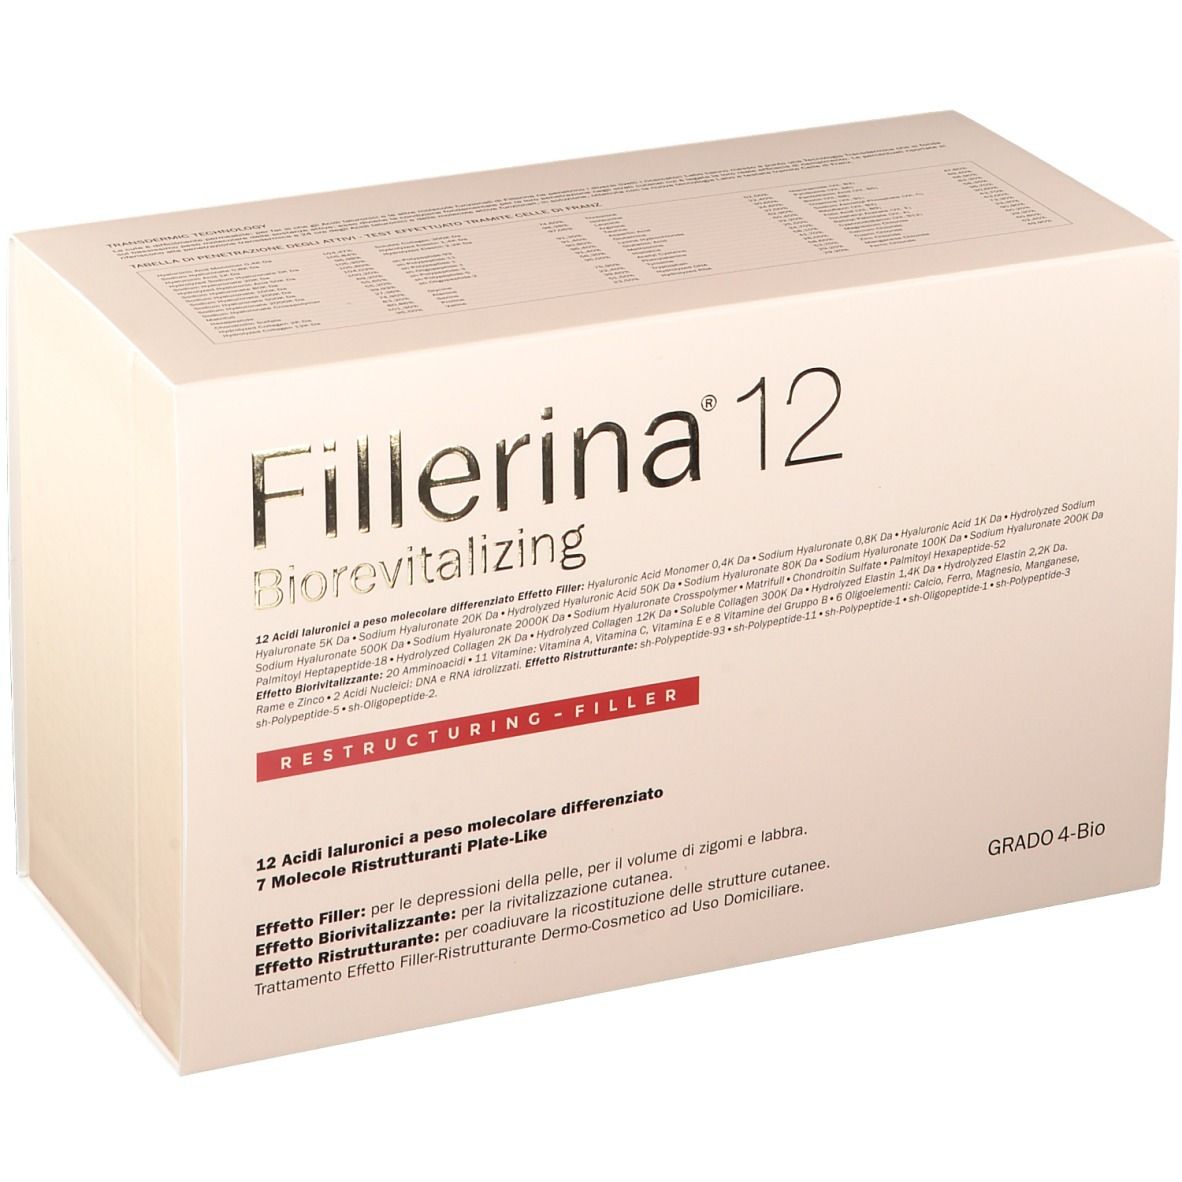 Image of Fillerina® 12 Biorevitalizing Restructuring Filler Grad 4